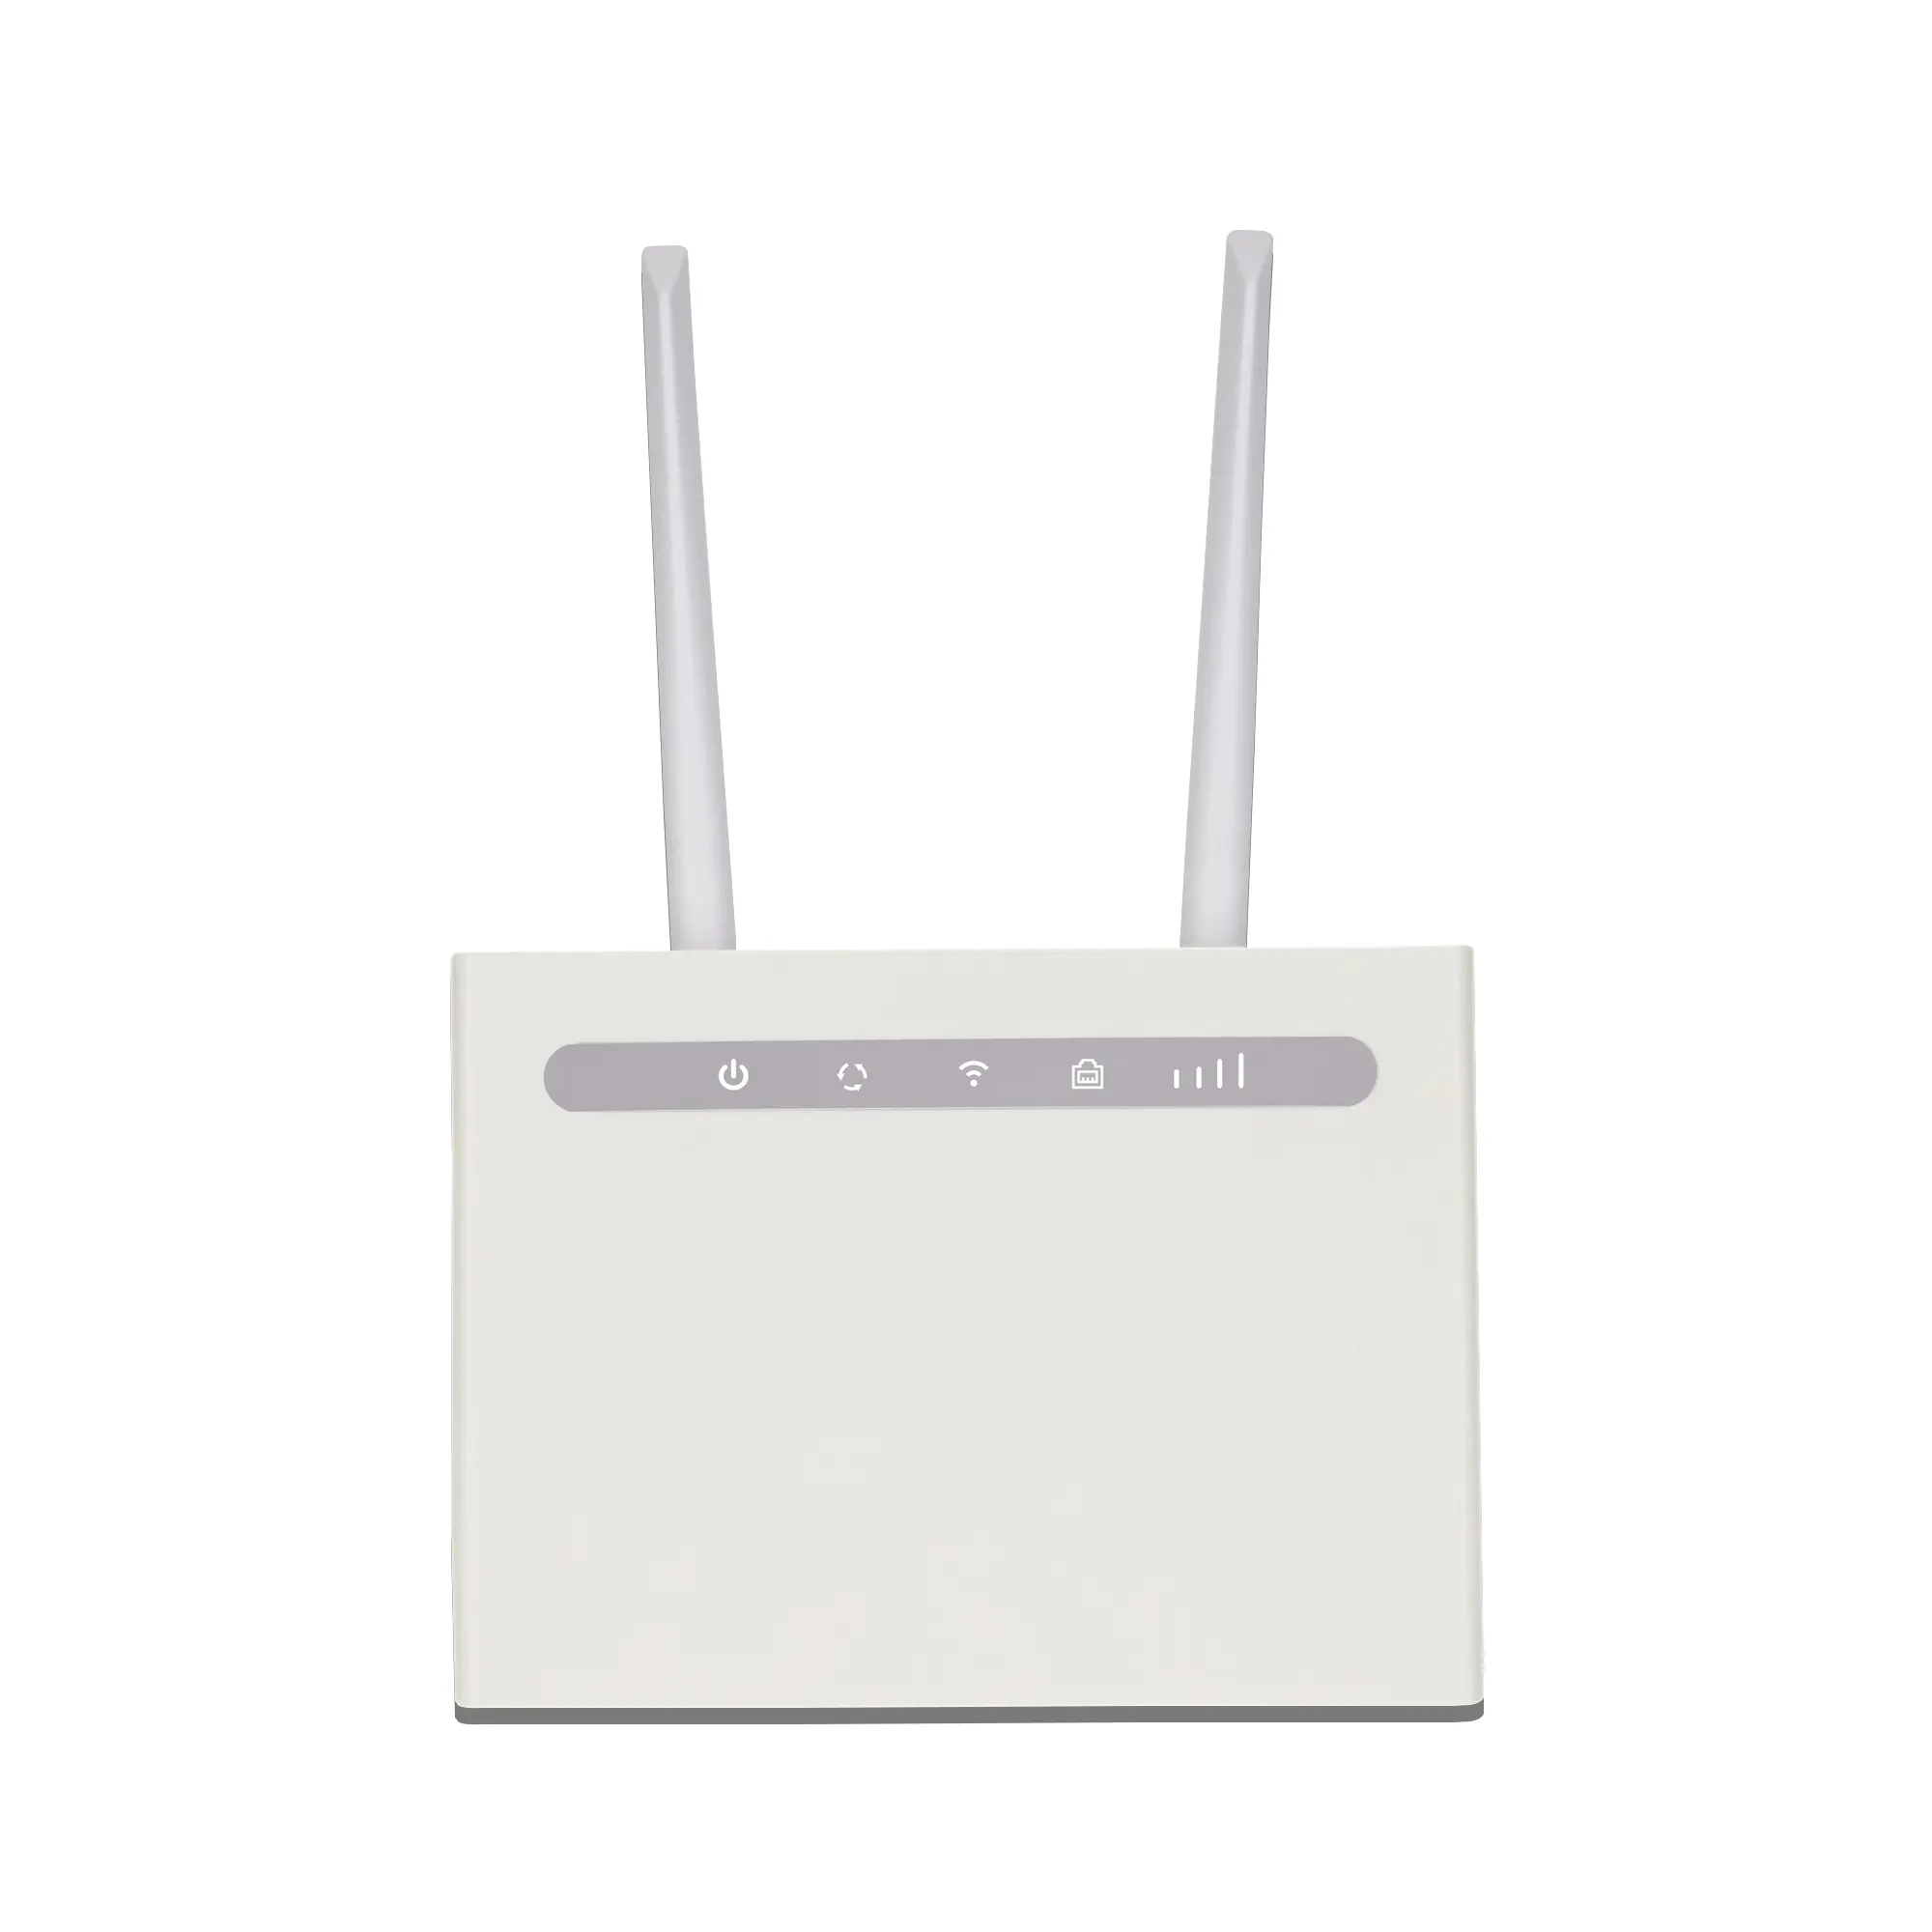 Edup 300mbps Cpe 4g Lte Modem Hotspot Routers Wifi B310 Lte Cpe Wifi Router 4g Lte Portable Wifi Router